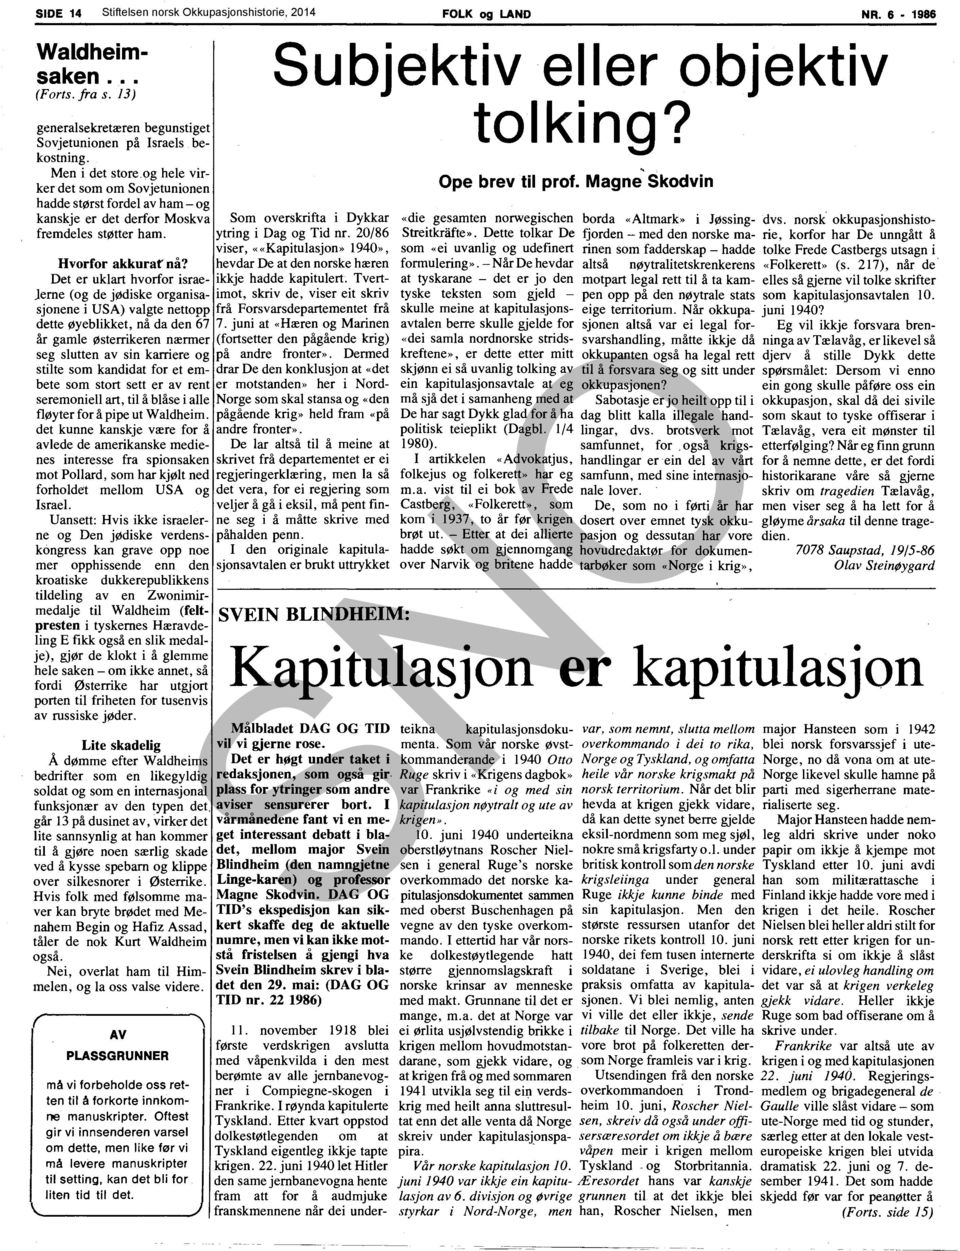 20/86 viser, ««Kapitulasjon» 1940», Hvorfor akkurafnå? hevdar De at den norske hæren Det er uklart hvorfor israe- ikkje hadde kapitulert.